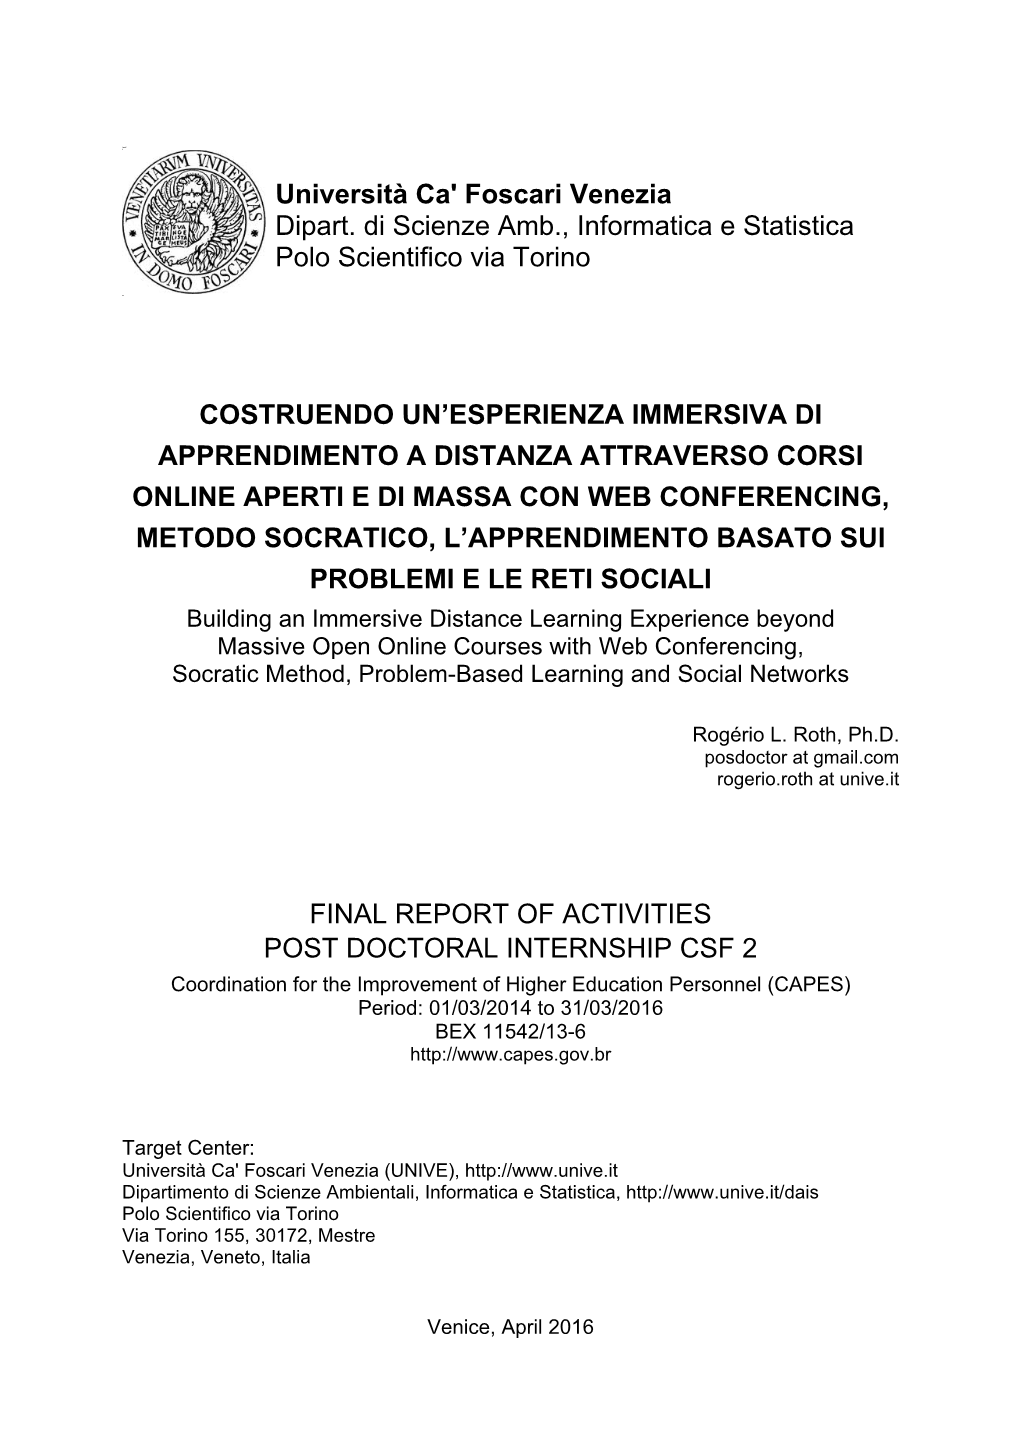 Università Ca' Foscari Venezia Dipart. Di Scienze Amb., Informatica E Statistica Polo Scientifico Via Torino